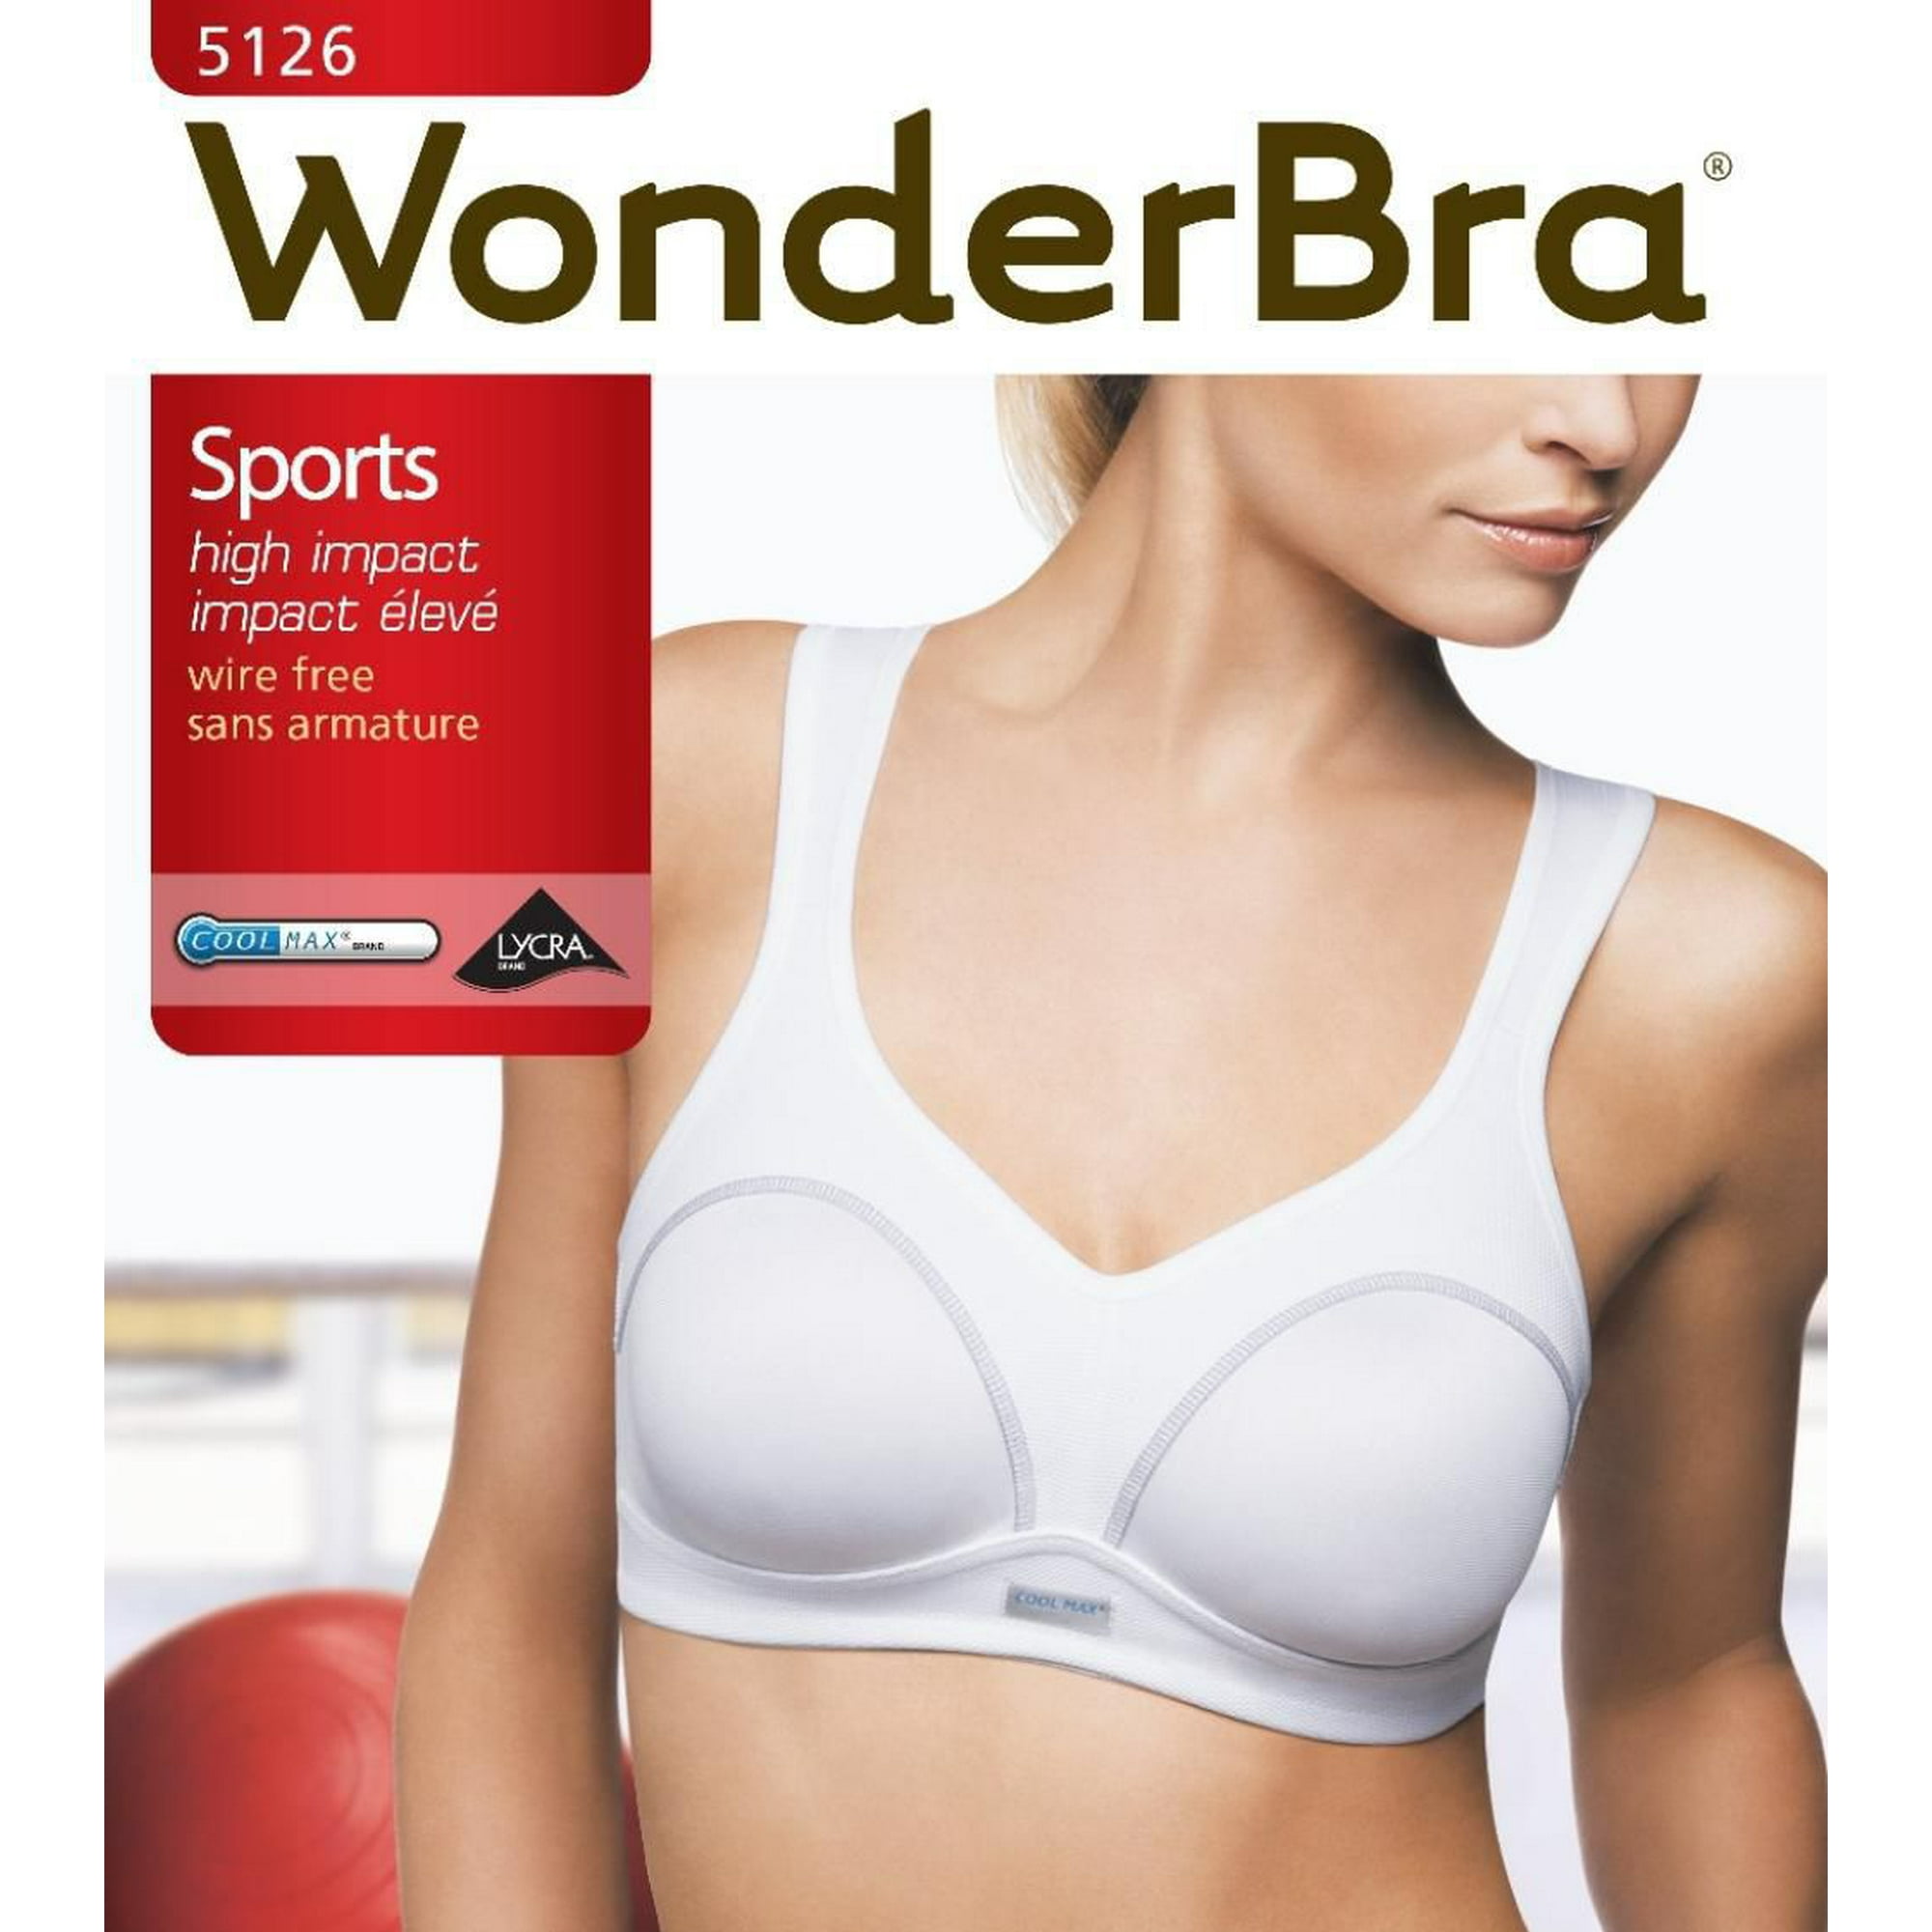 34C Wonderbra W5126 wireless sports bra black NWOT  Wonder bra, Black sports  bra, Wireless sports bra